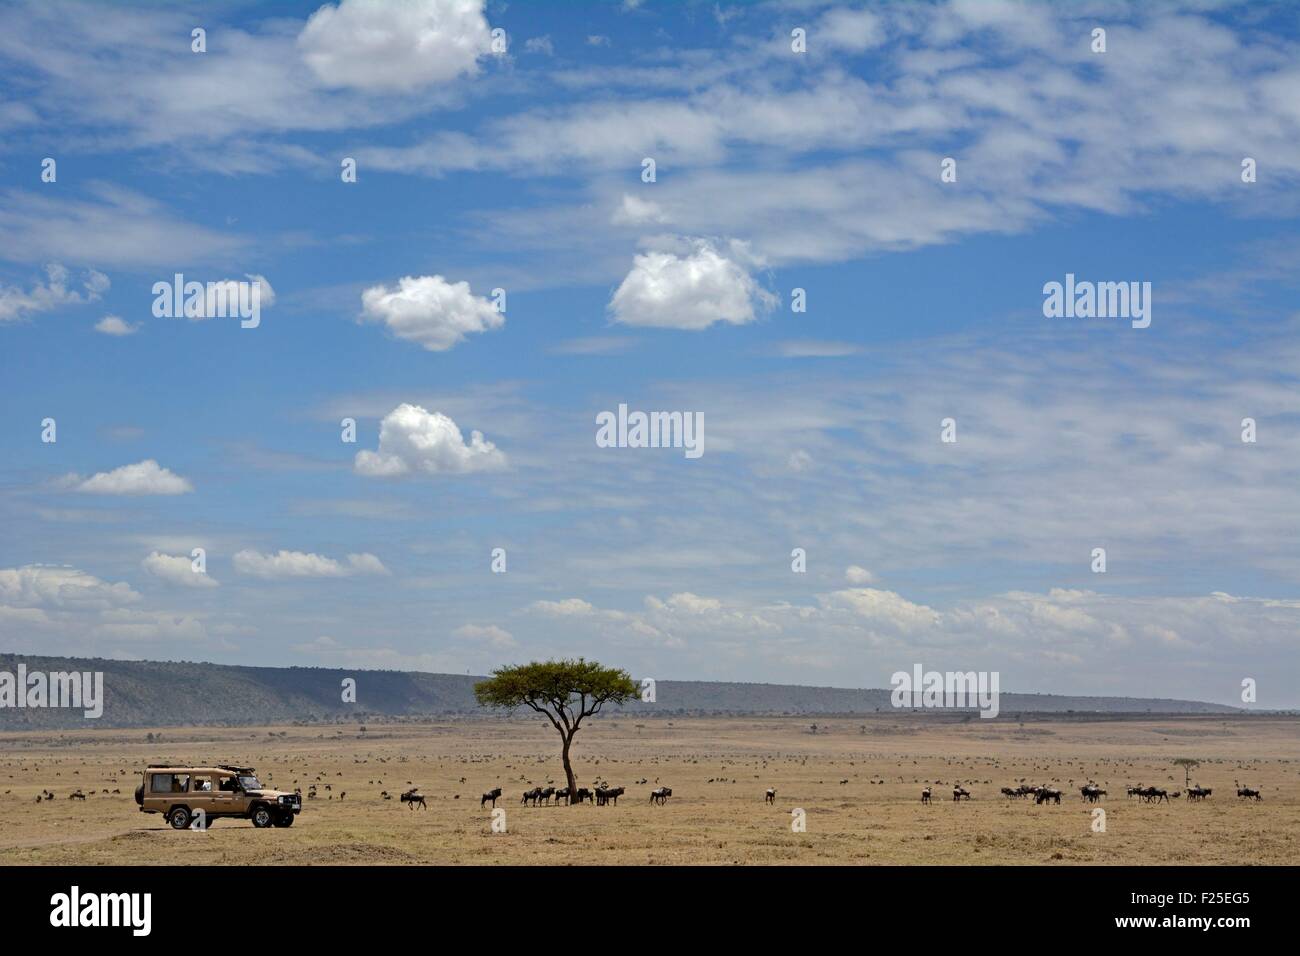 Kenya, Masai Mara Reserve, 4x4 safari vehicle in the savanna near Gnoux Stock Photo